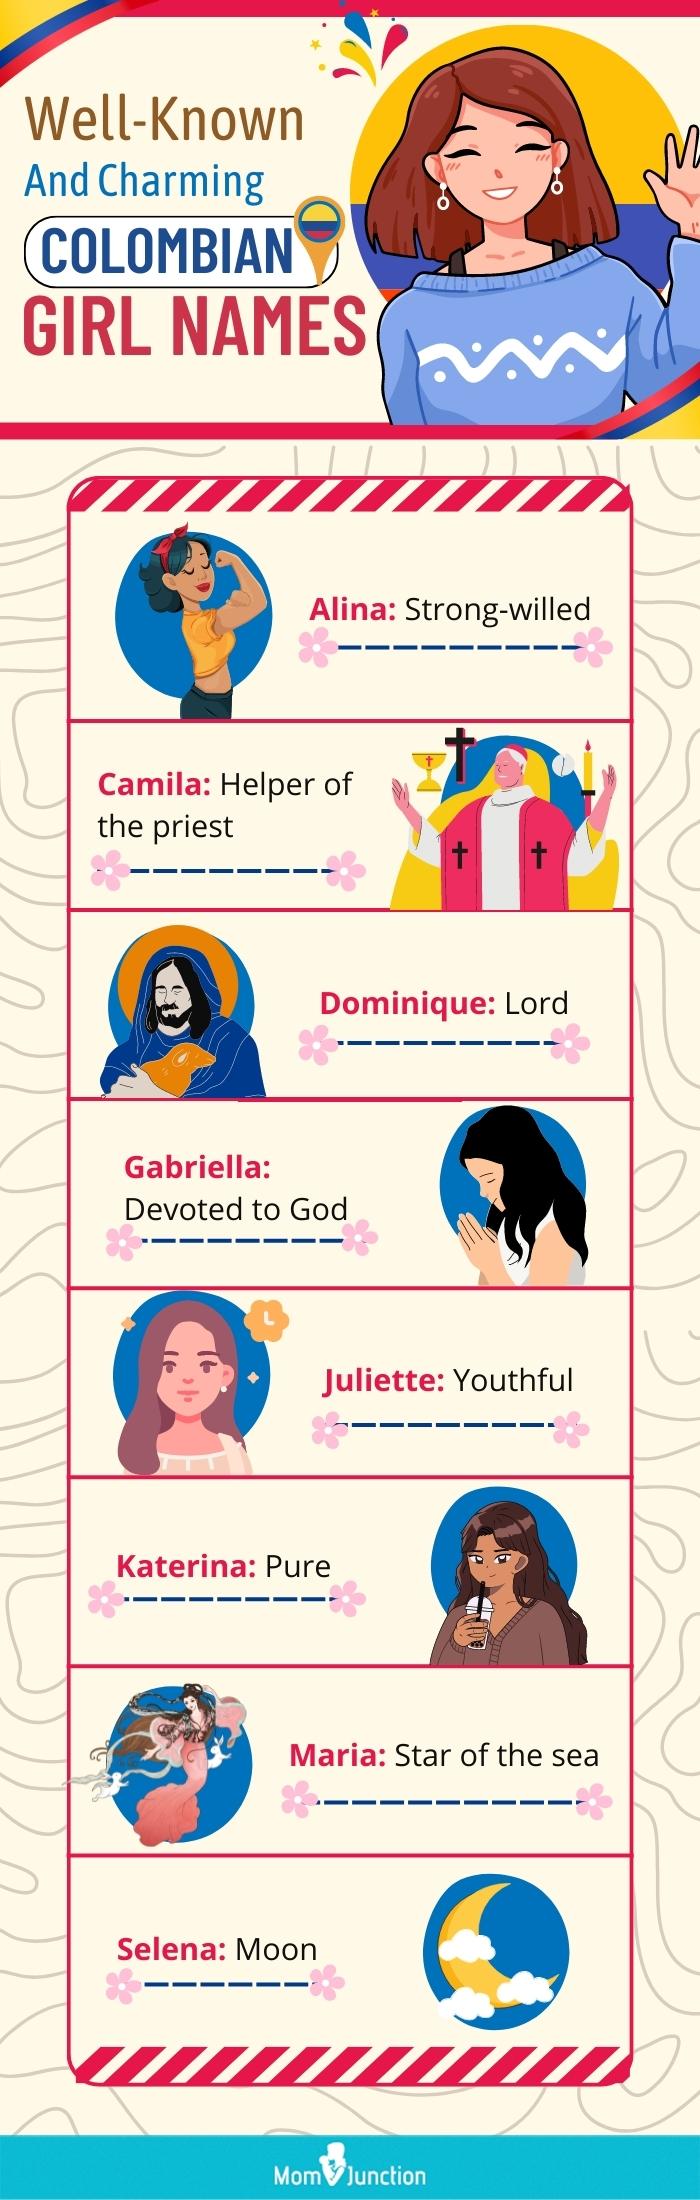 哥伦比亚女孩的名字(信息图)